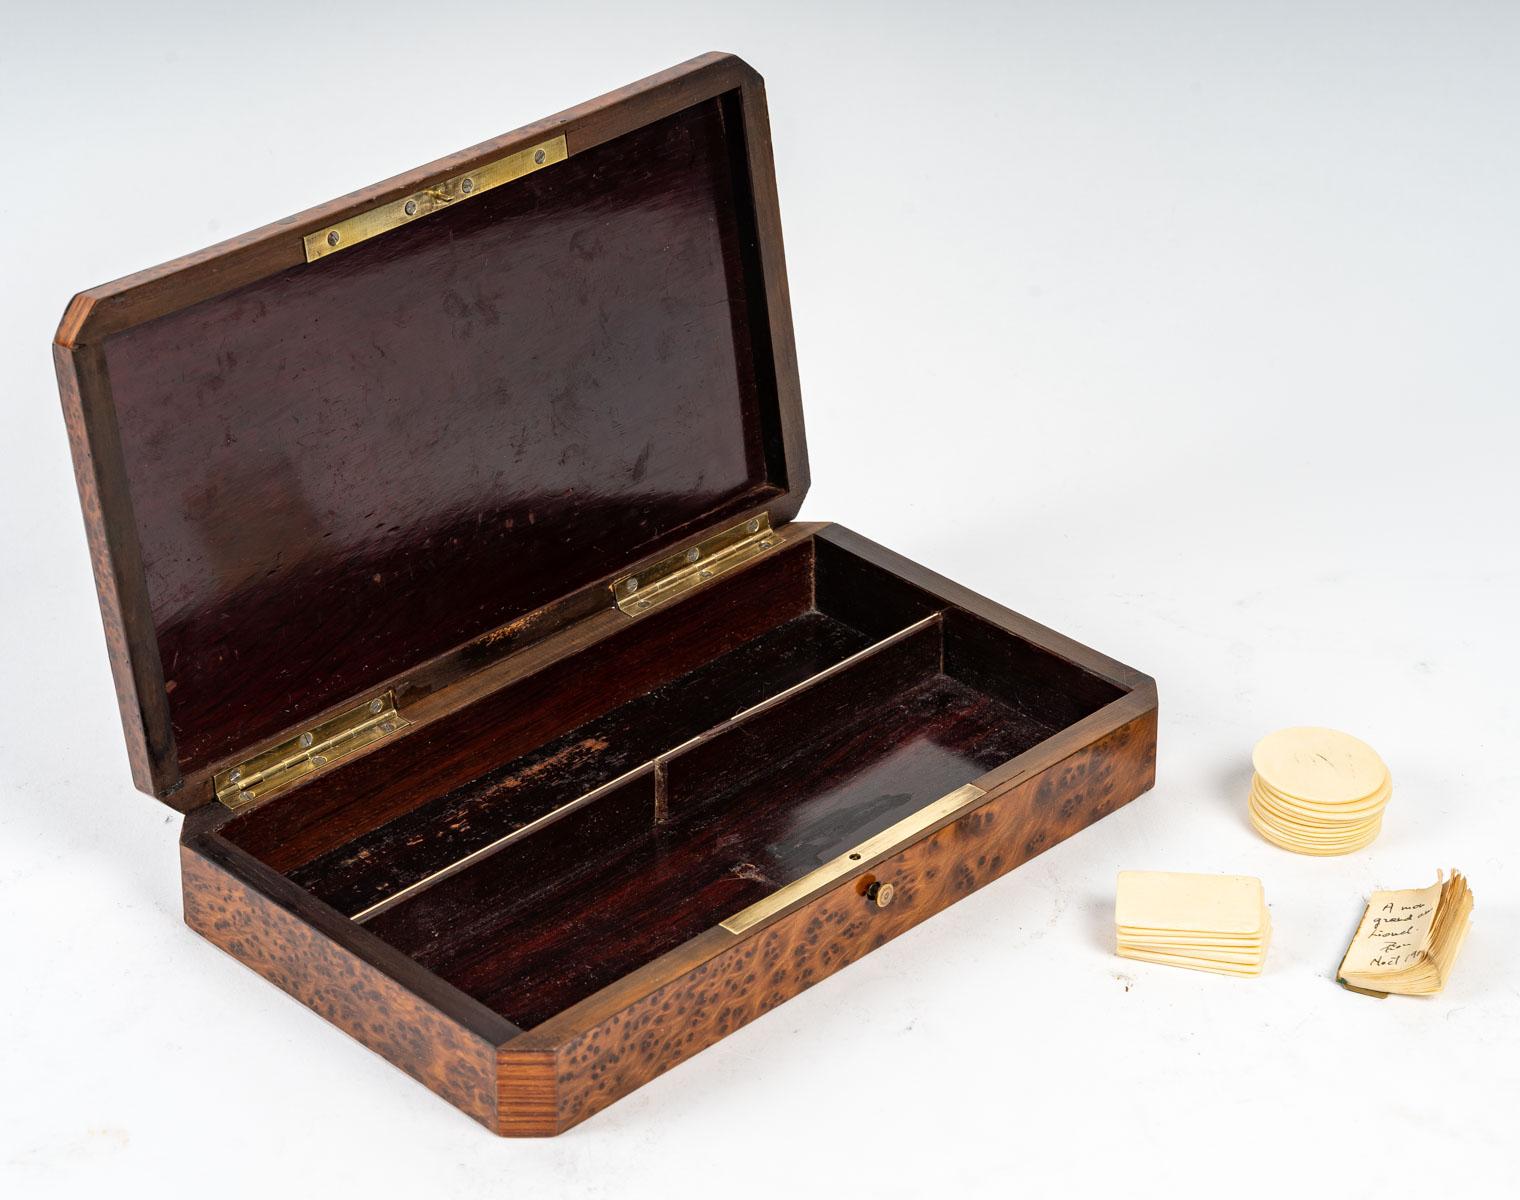 Caja de juego, siglo XIX.
Caja de juego de época Napoleón III, siglo XIX en marquetería de maderas preciosas.
Medidas: Alto: 5 cm, Ancho: 22 cm, Fondo: 13 cm.